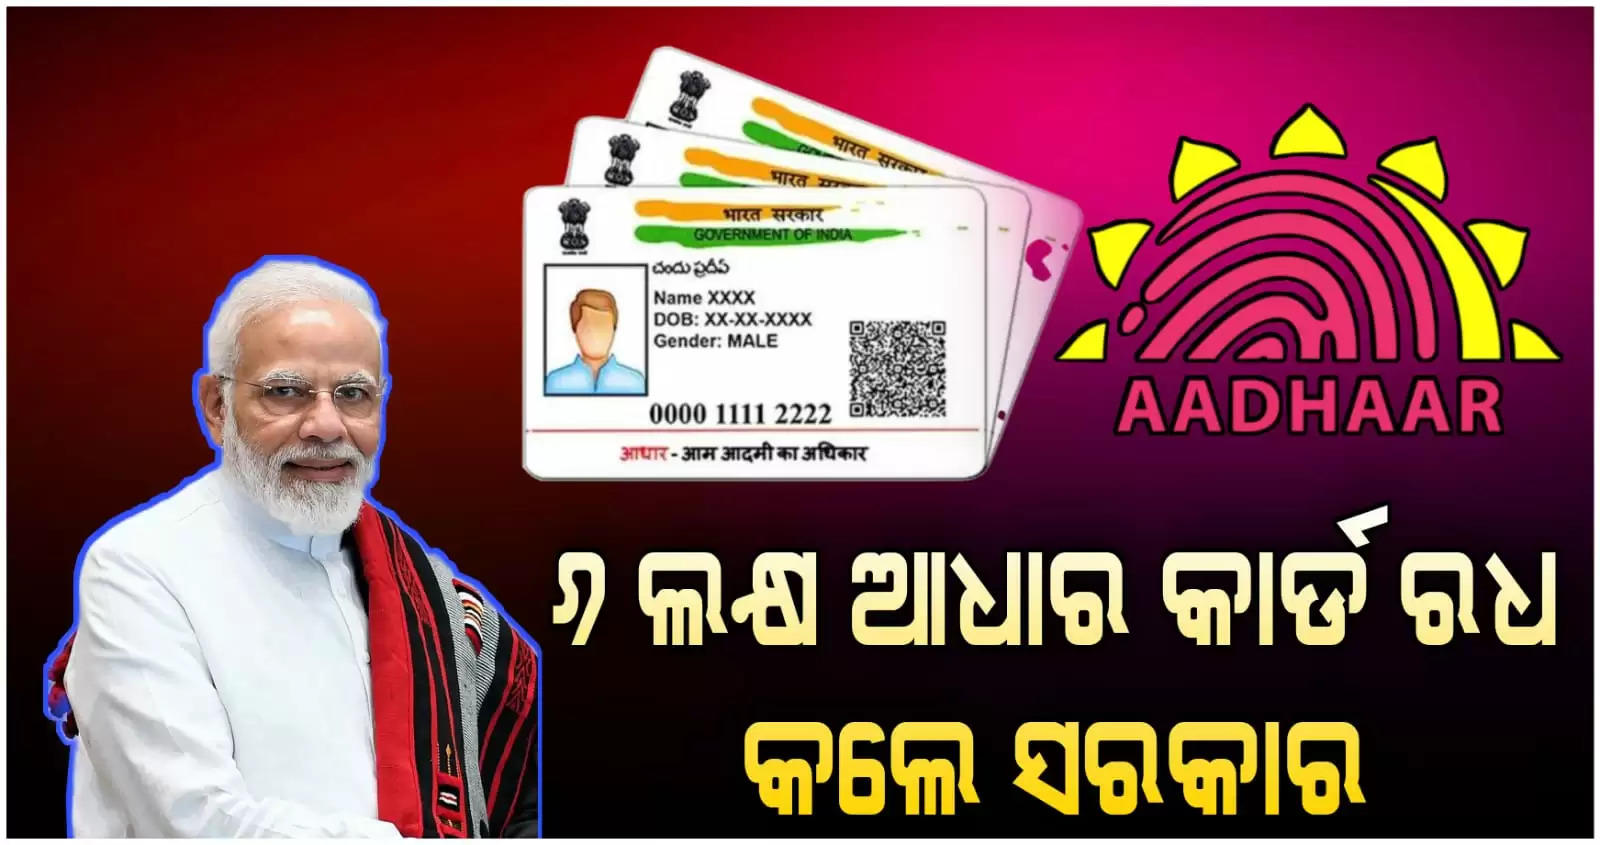 Adhar card 